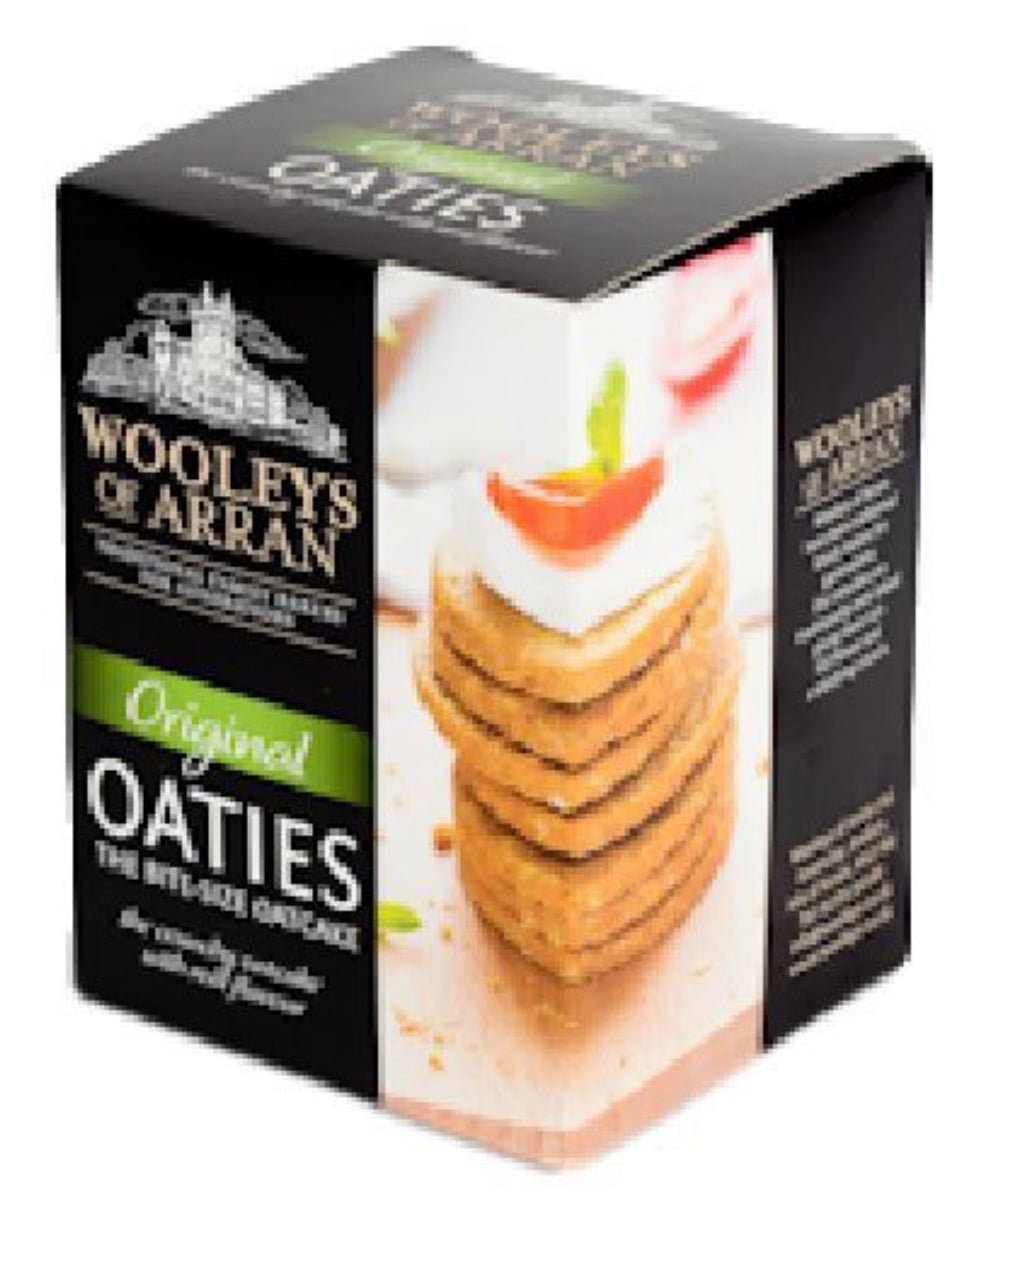 Wooley's of Arran Oat Cakes - Original Oaties 190g